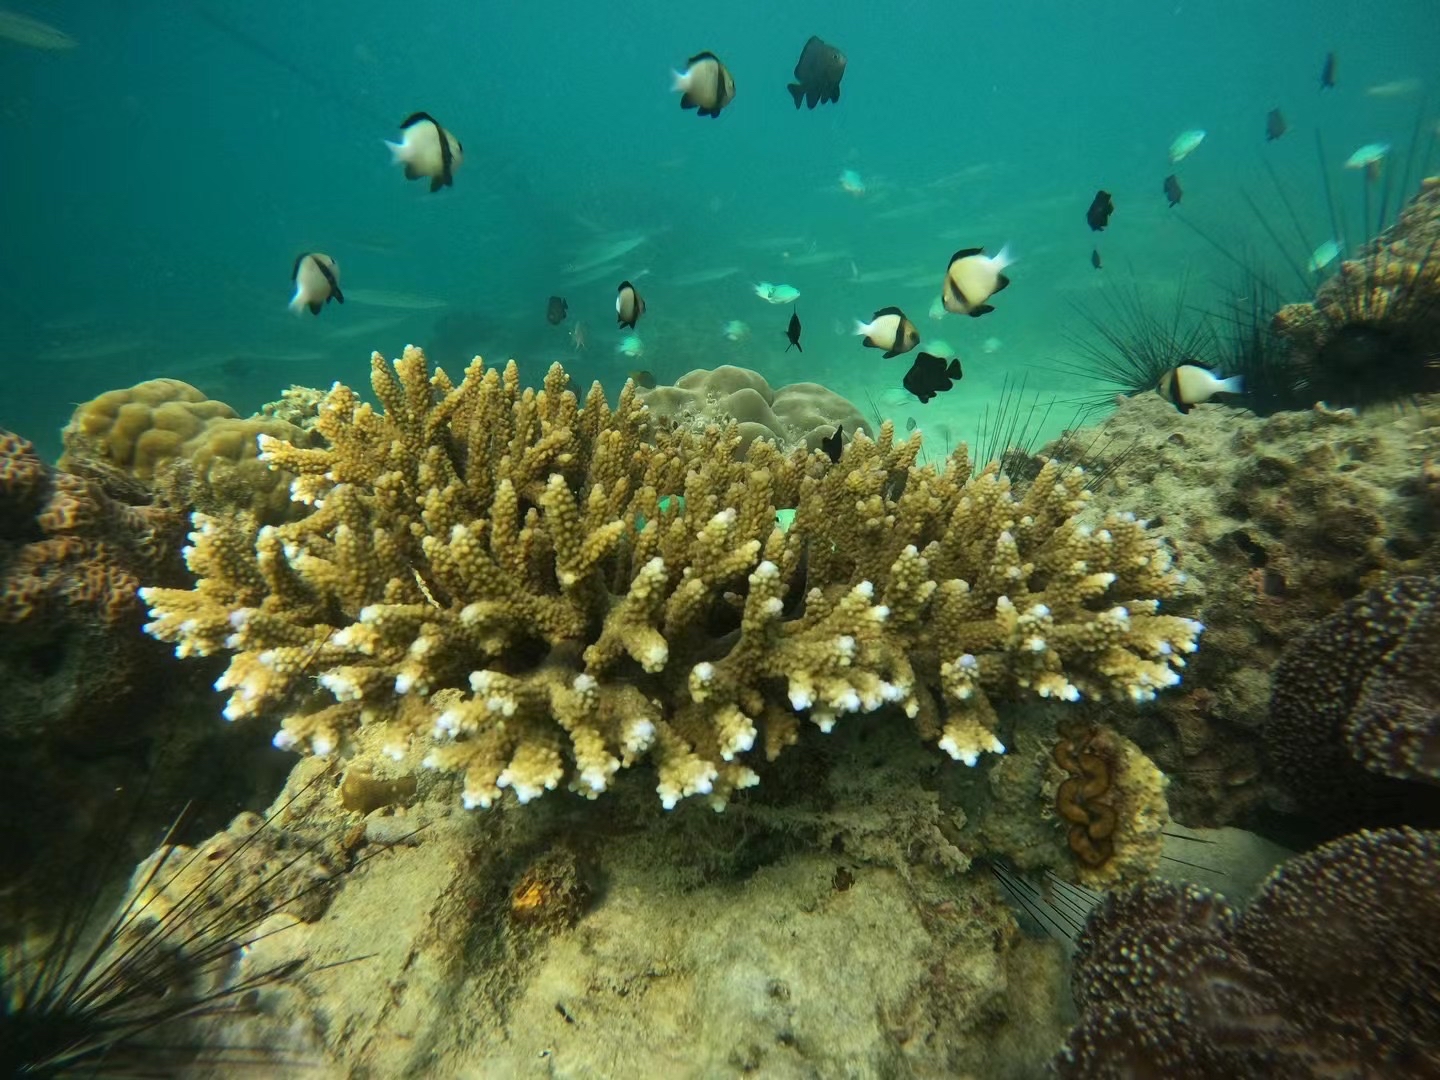 海底的世界总是那么奇妙 生活着一群可爱的鱼儿 #泰国甲米岛 #海底世界